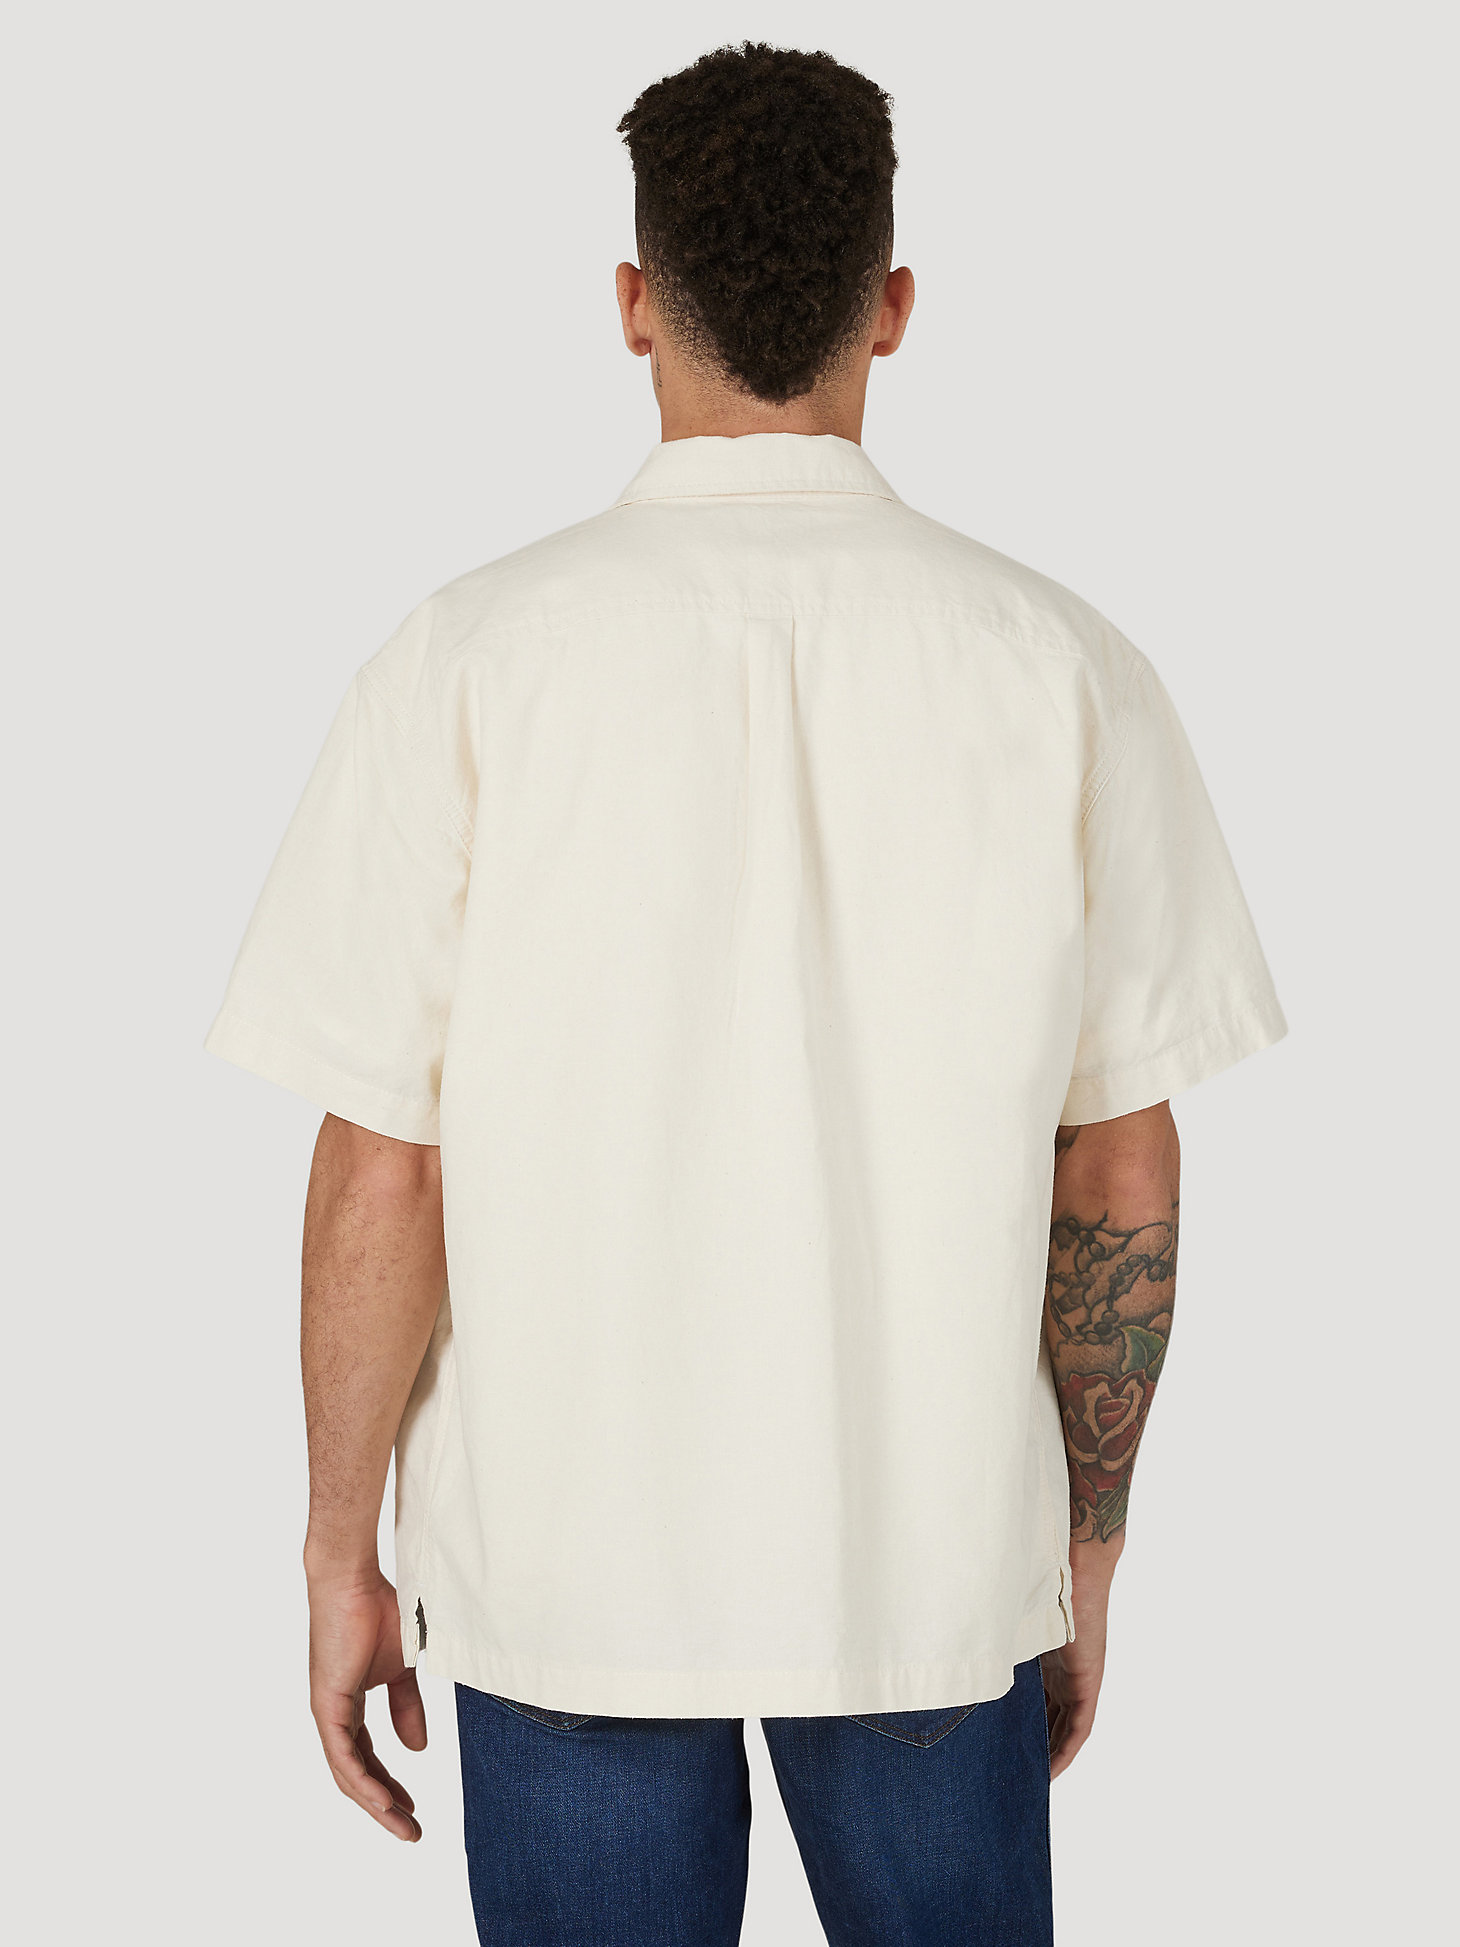 Men's Wrangler® Casey Jones Oversized Shirt in Snow White alternative view 1